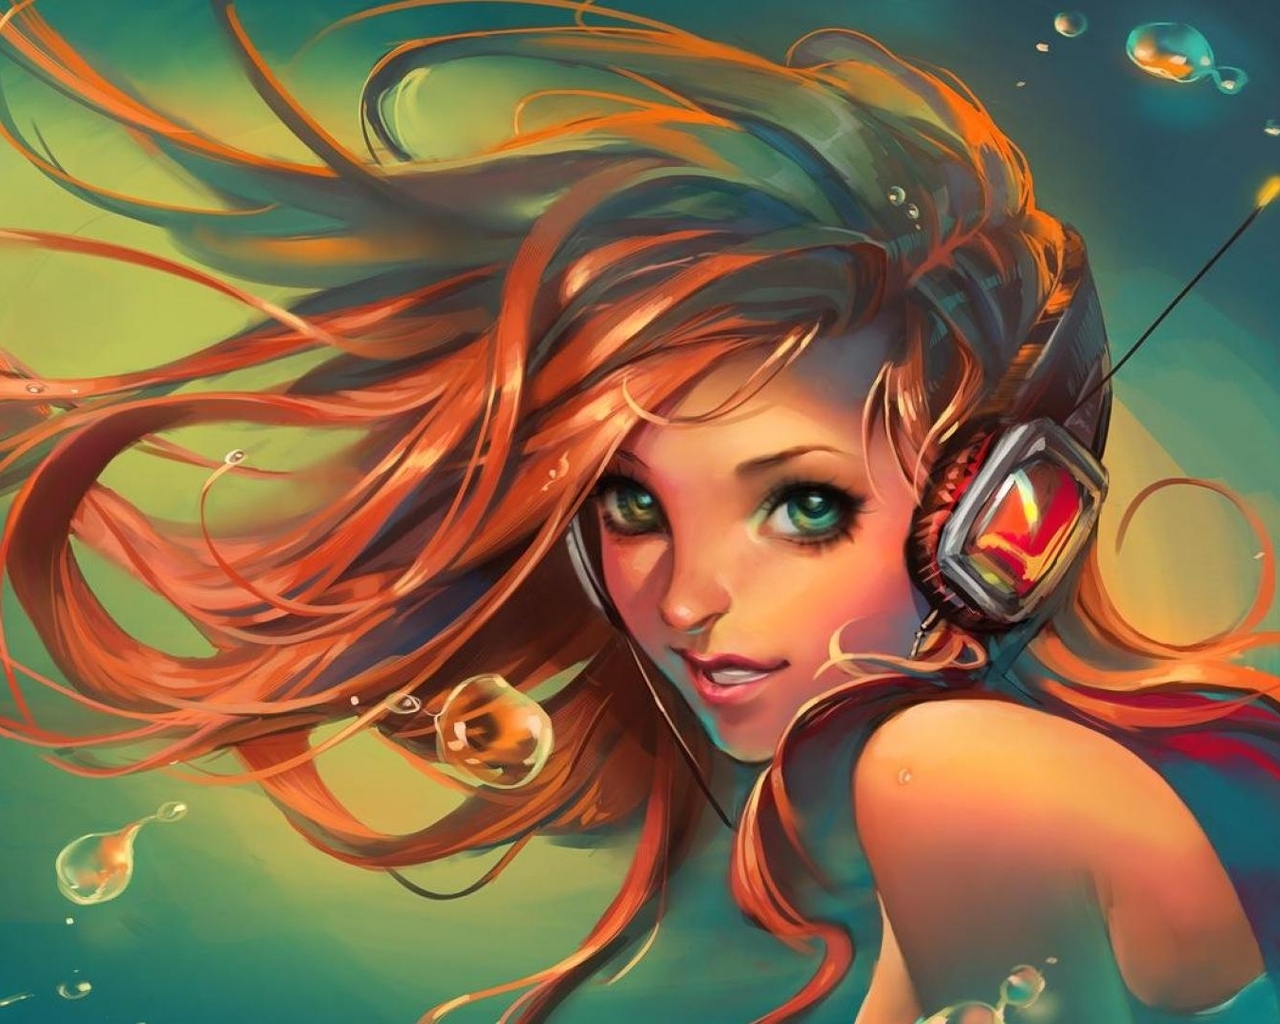 Картинка: Девушка, русалка, наушники, слушает, длинные волосы, вода, пузыри, рисунок